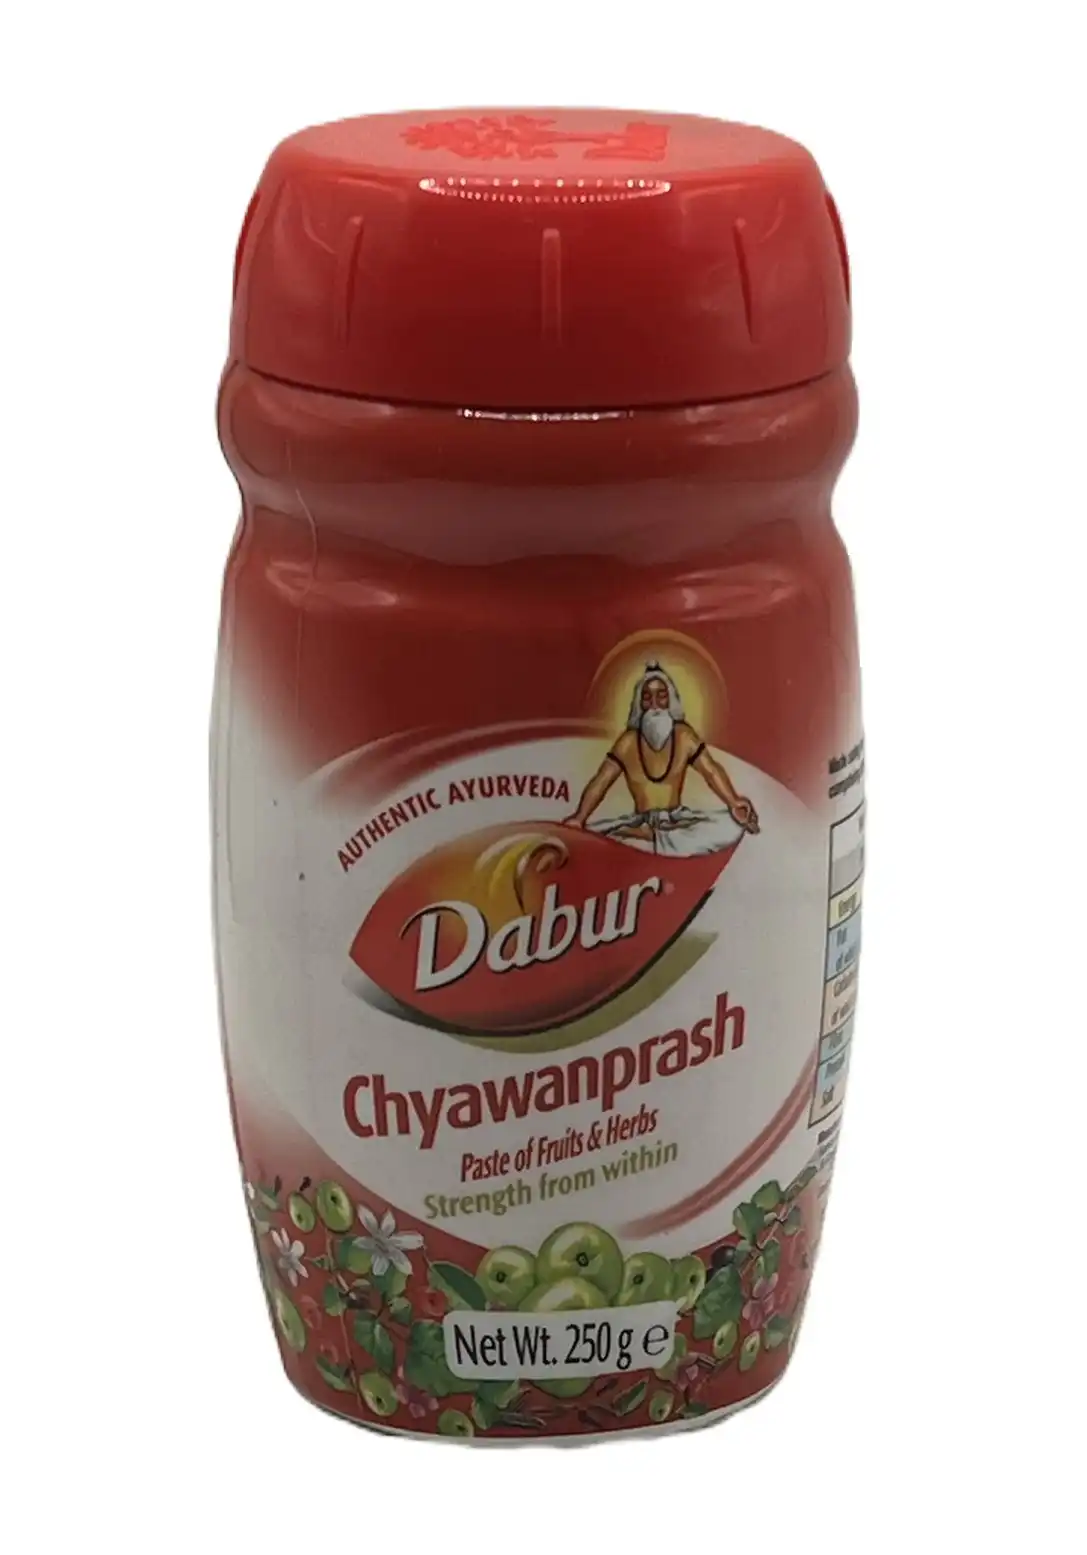 chyawanprash paste of fruits and herbs-dabur